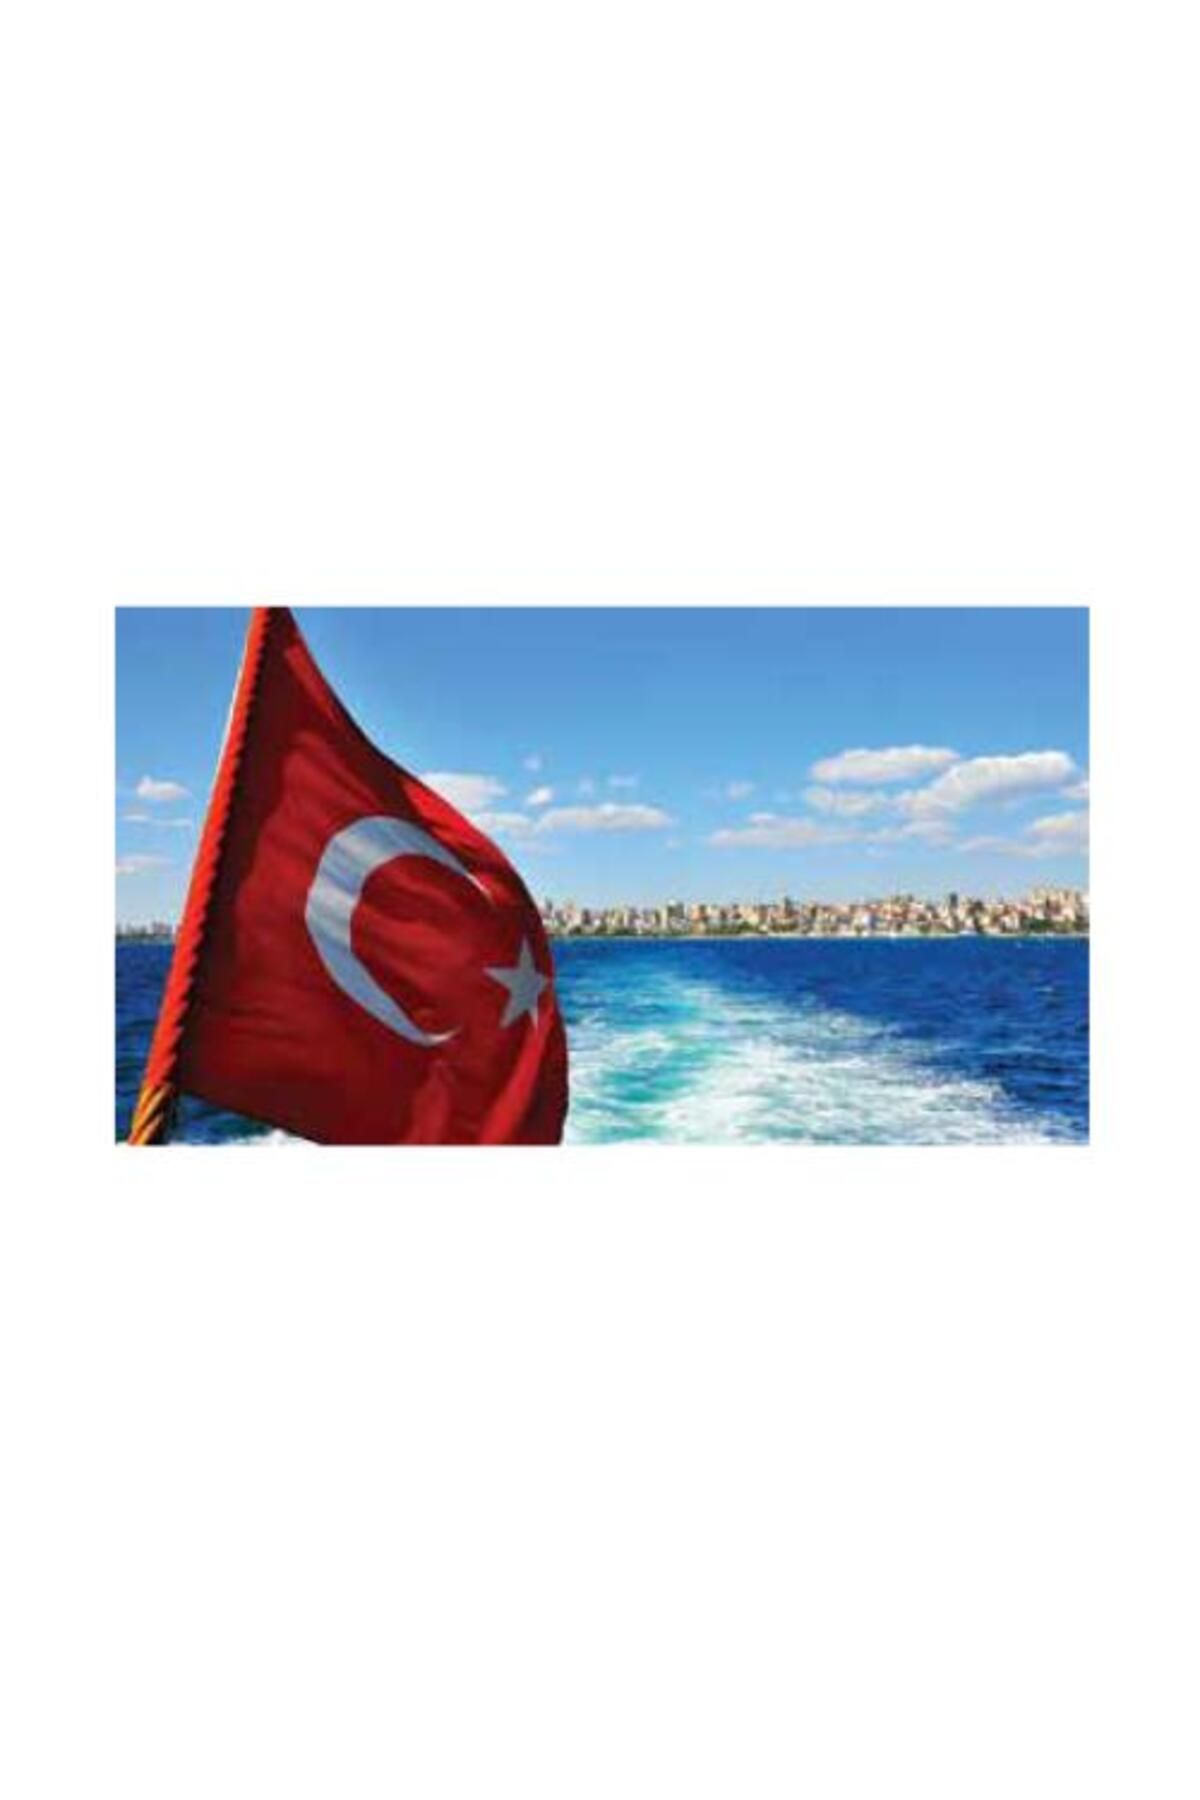 KALE Türk Bayrağı 120x180cm